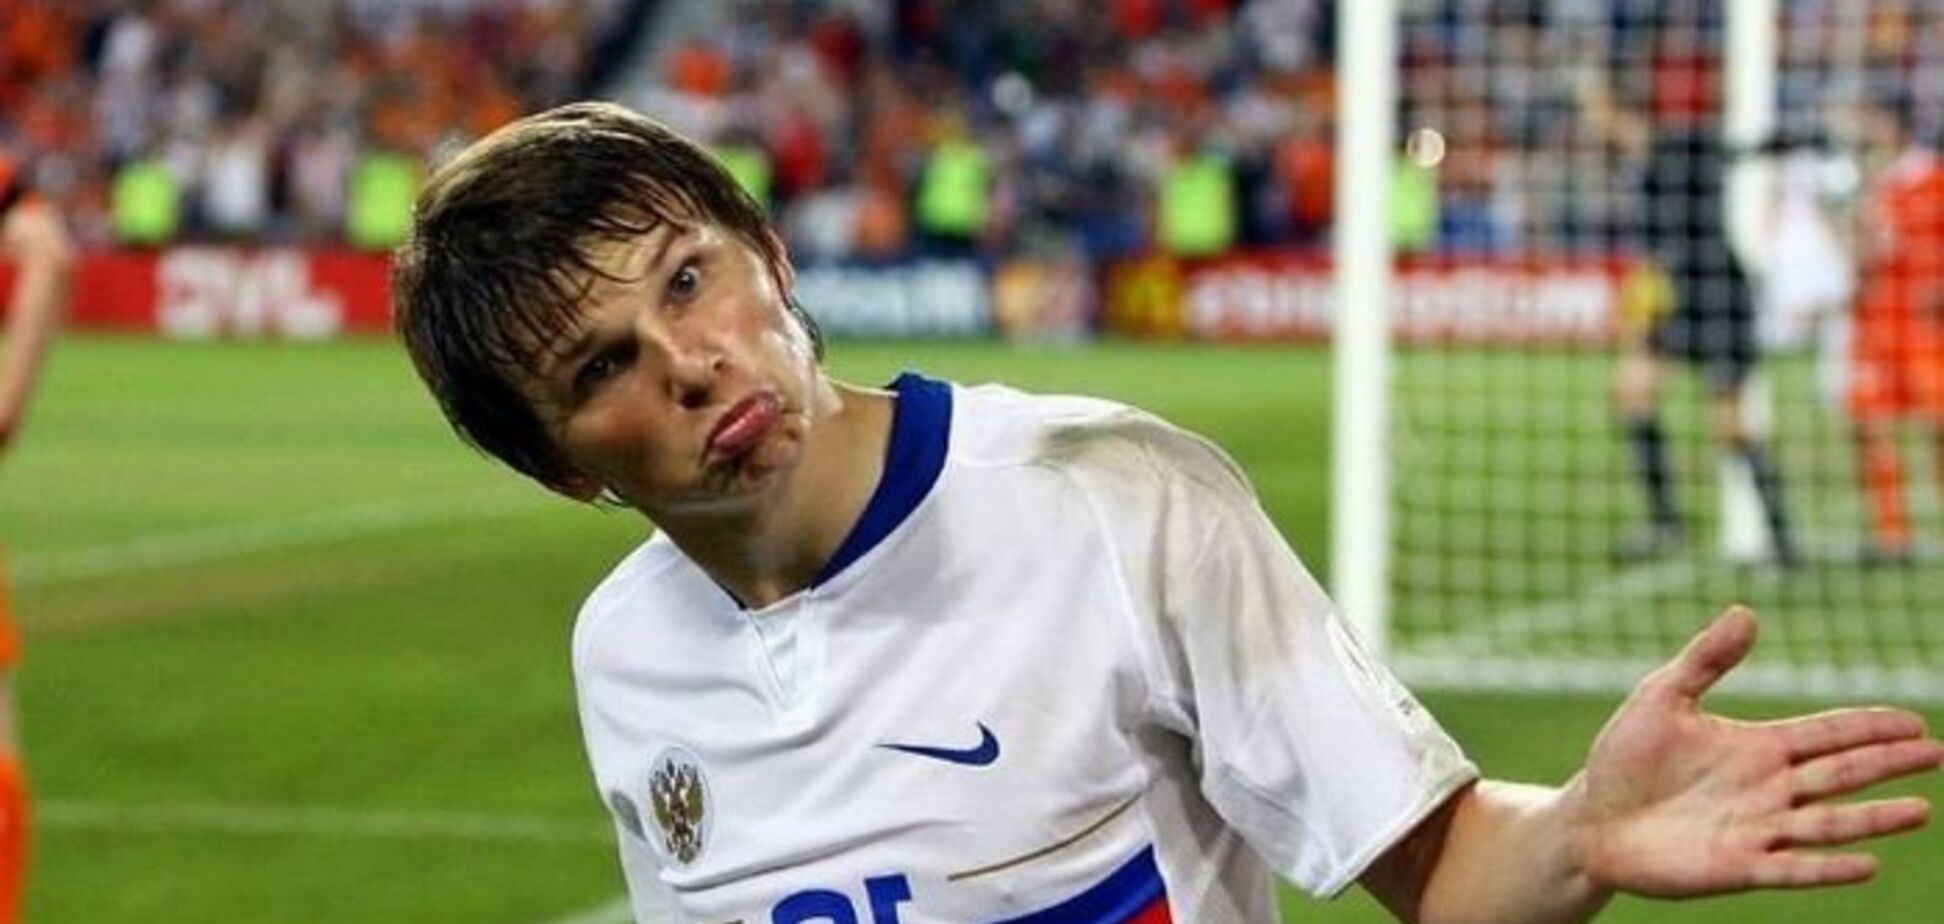 'Наступив на голову': російський футболіст здійснив мерзенний вчинок